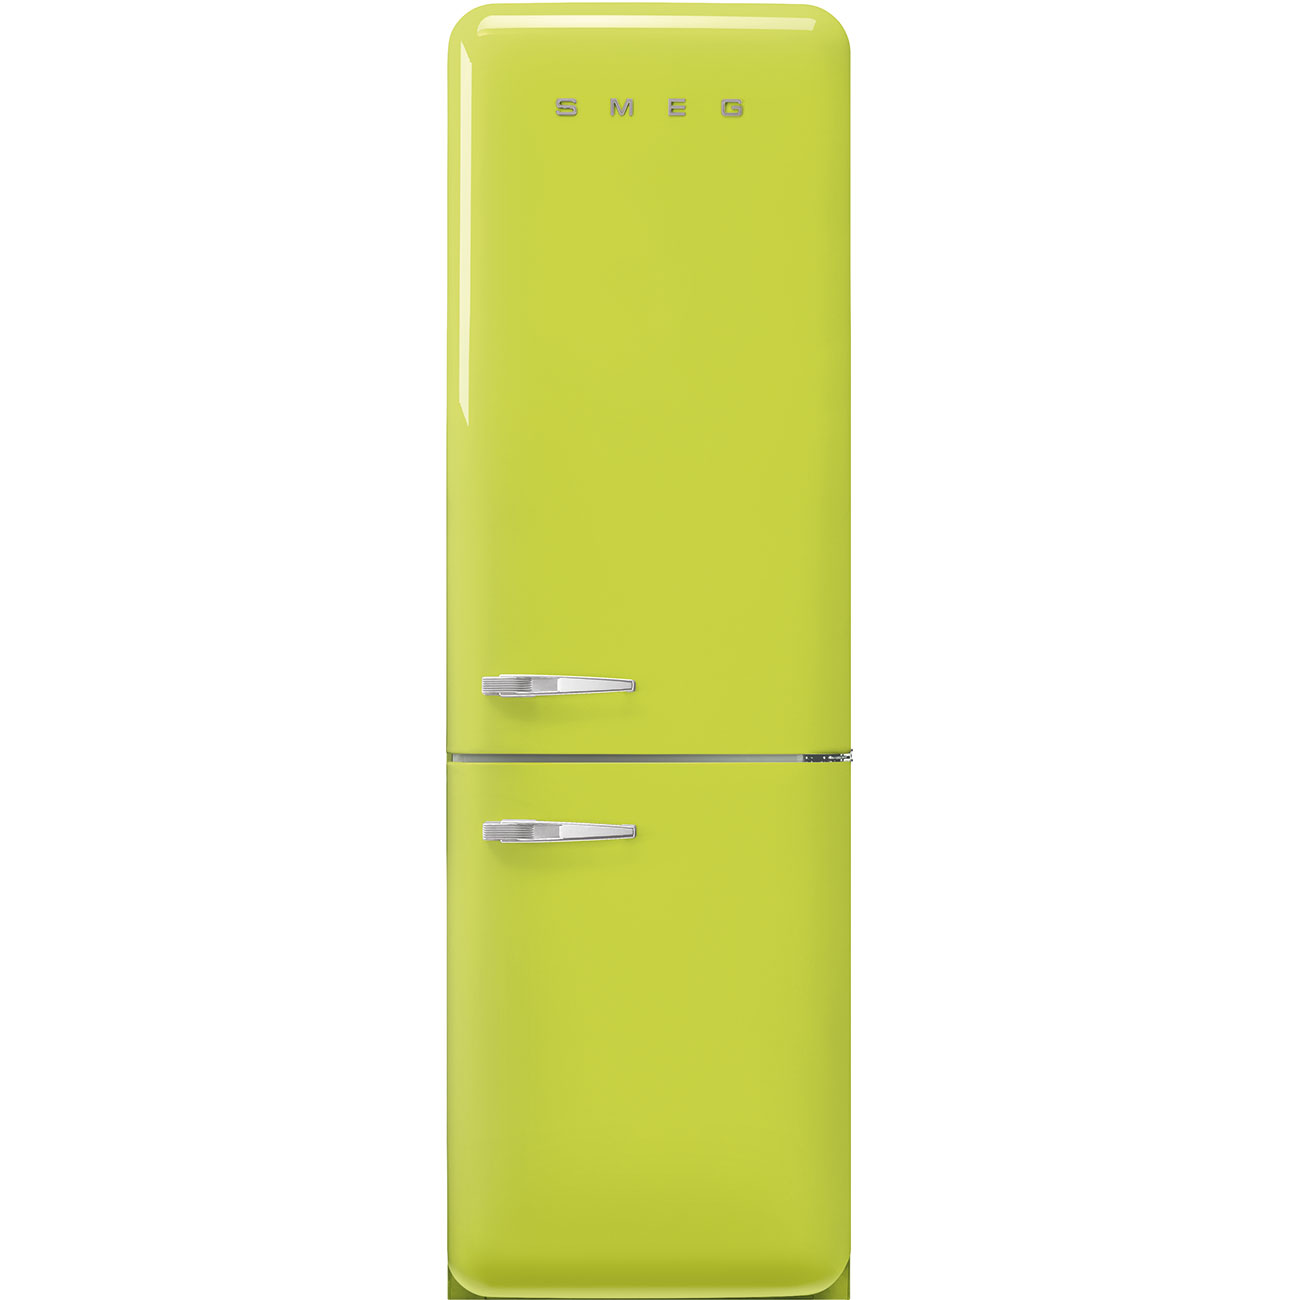 Lime green refrigerator - Smeg_1